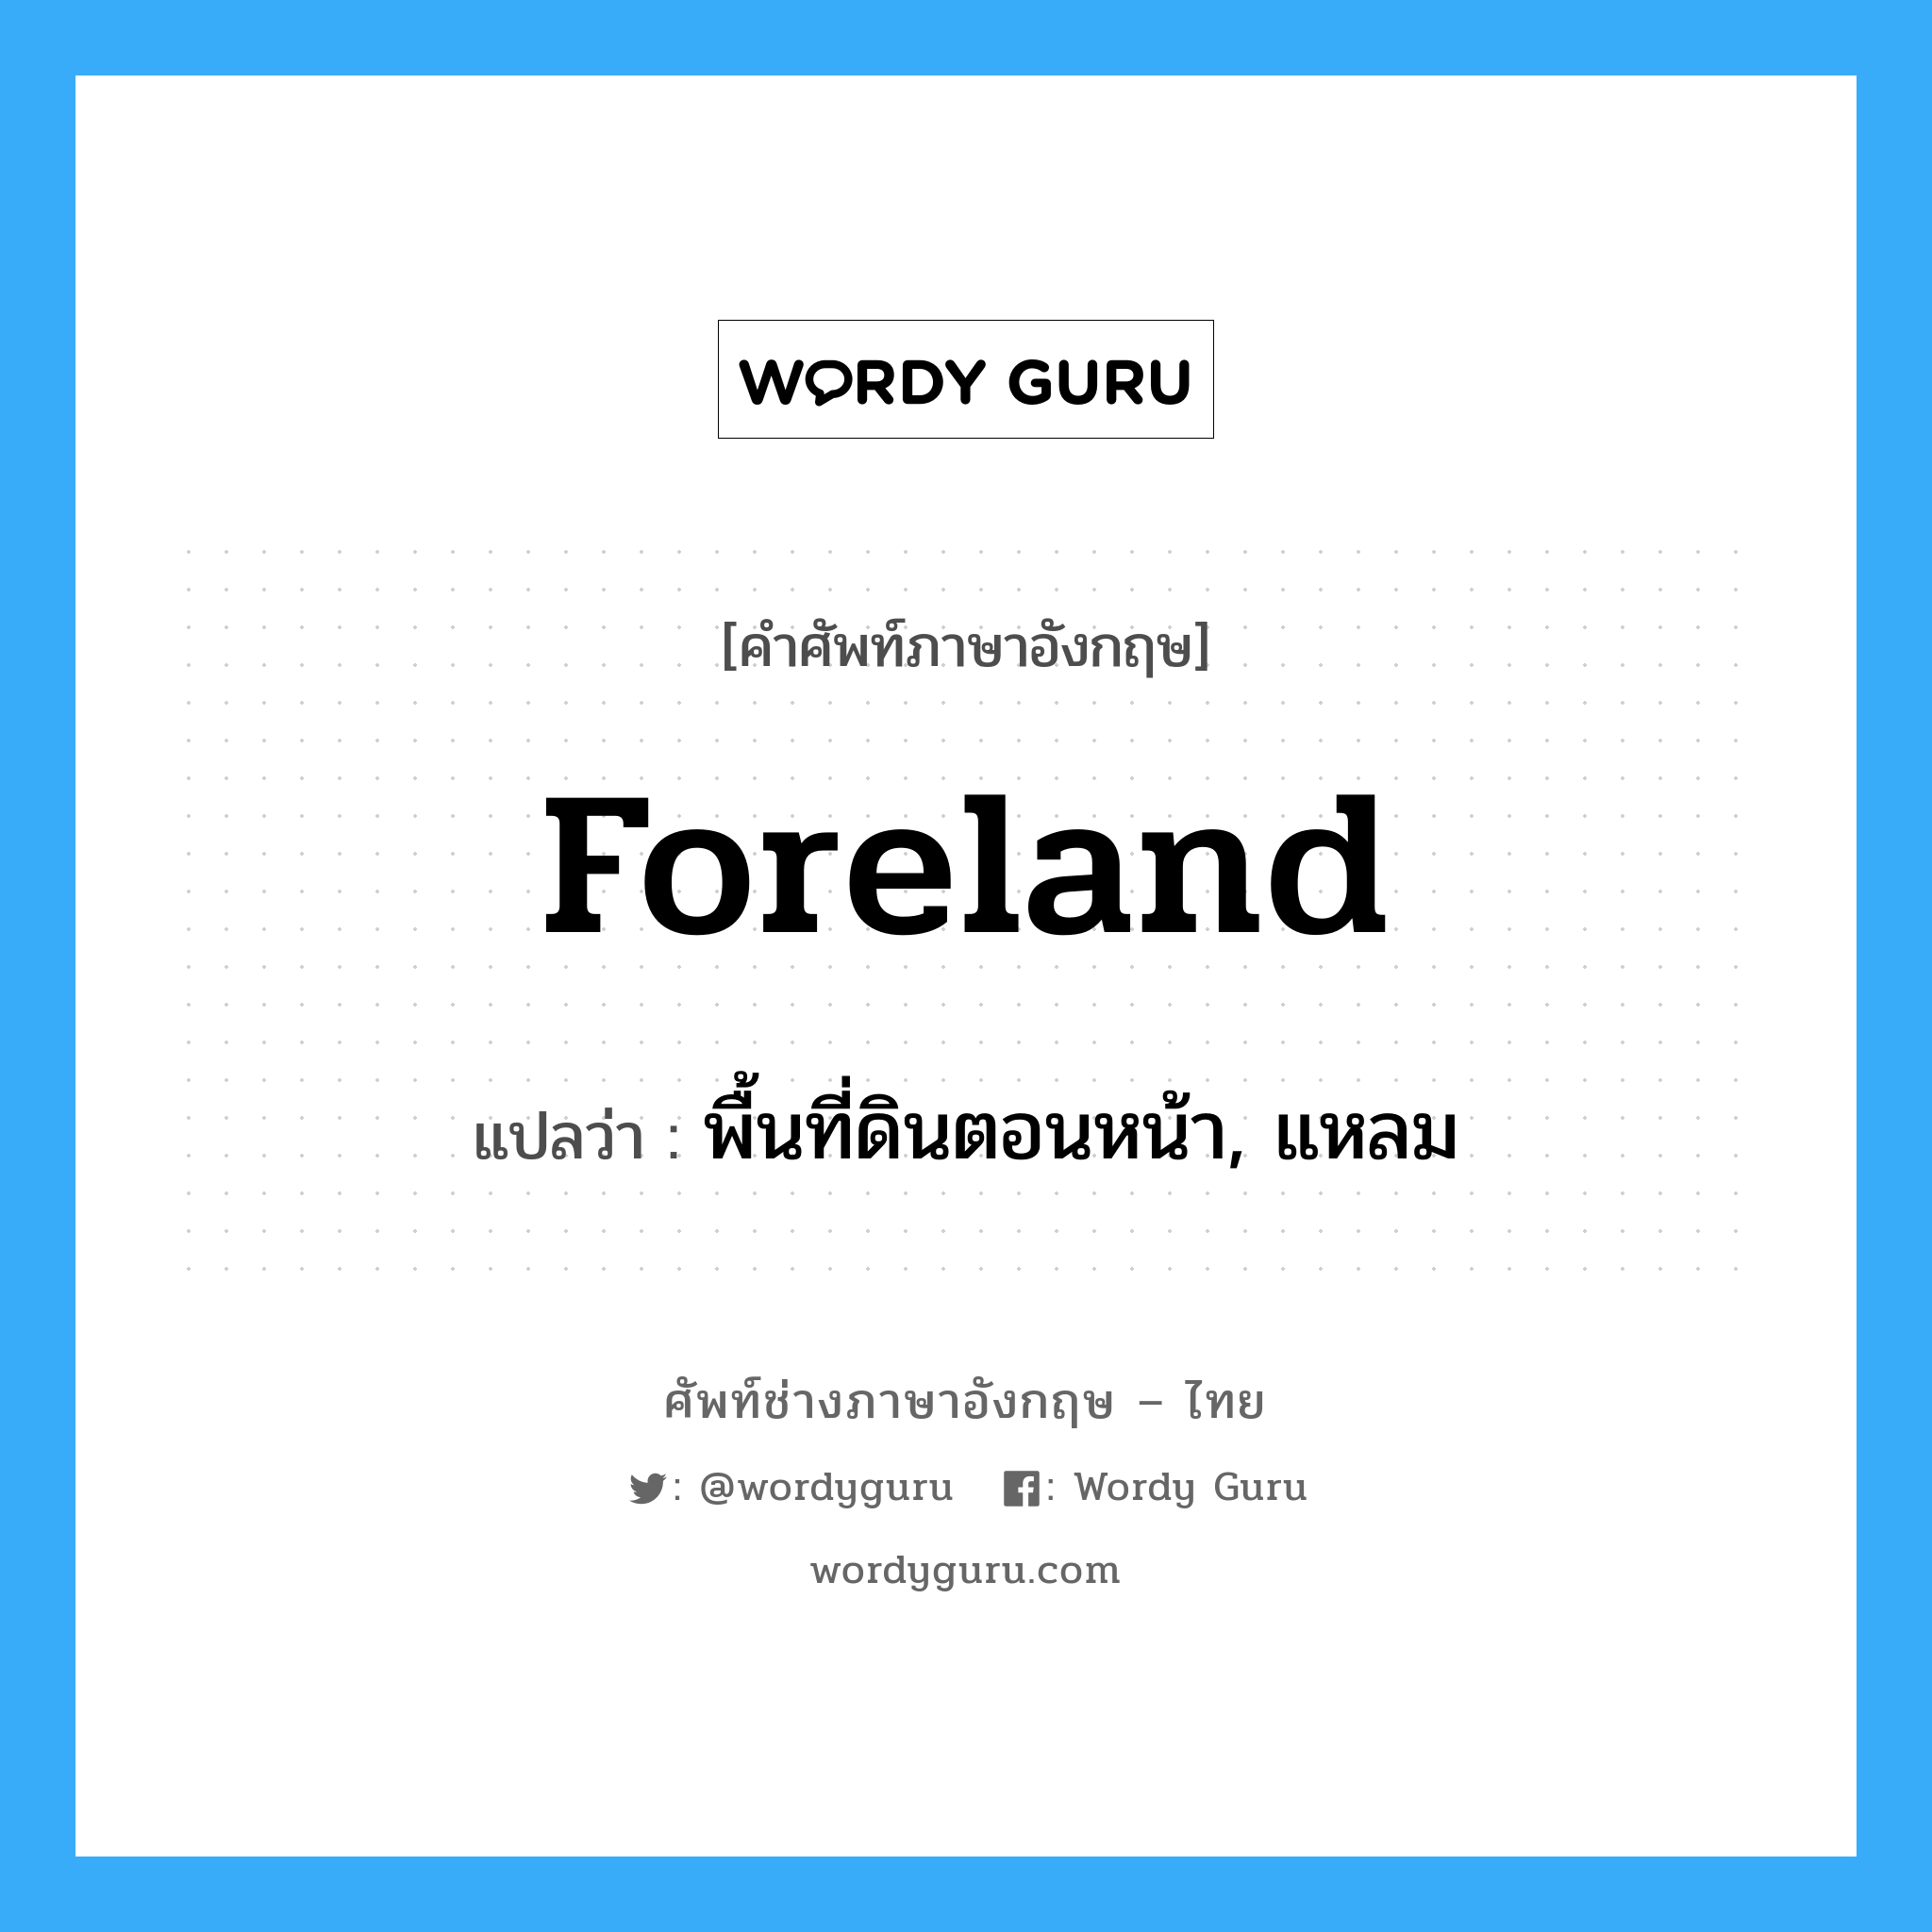 พื้นที่ดินตอนหน้า, แหลม ภาษาอังกฤษ?, คำศัพท์ช่างภาษาอังกฤษ - ไทย พื้นที่ดินตอนหน้า, แหลม คำศัพท์ภาษาอังกฤษ พื้นที่ดินตอนหน้า, แหลม แปลว่า foreland